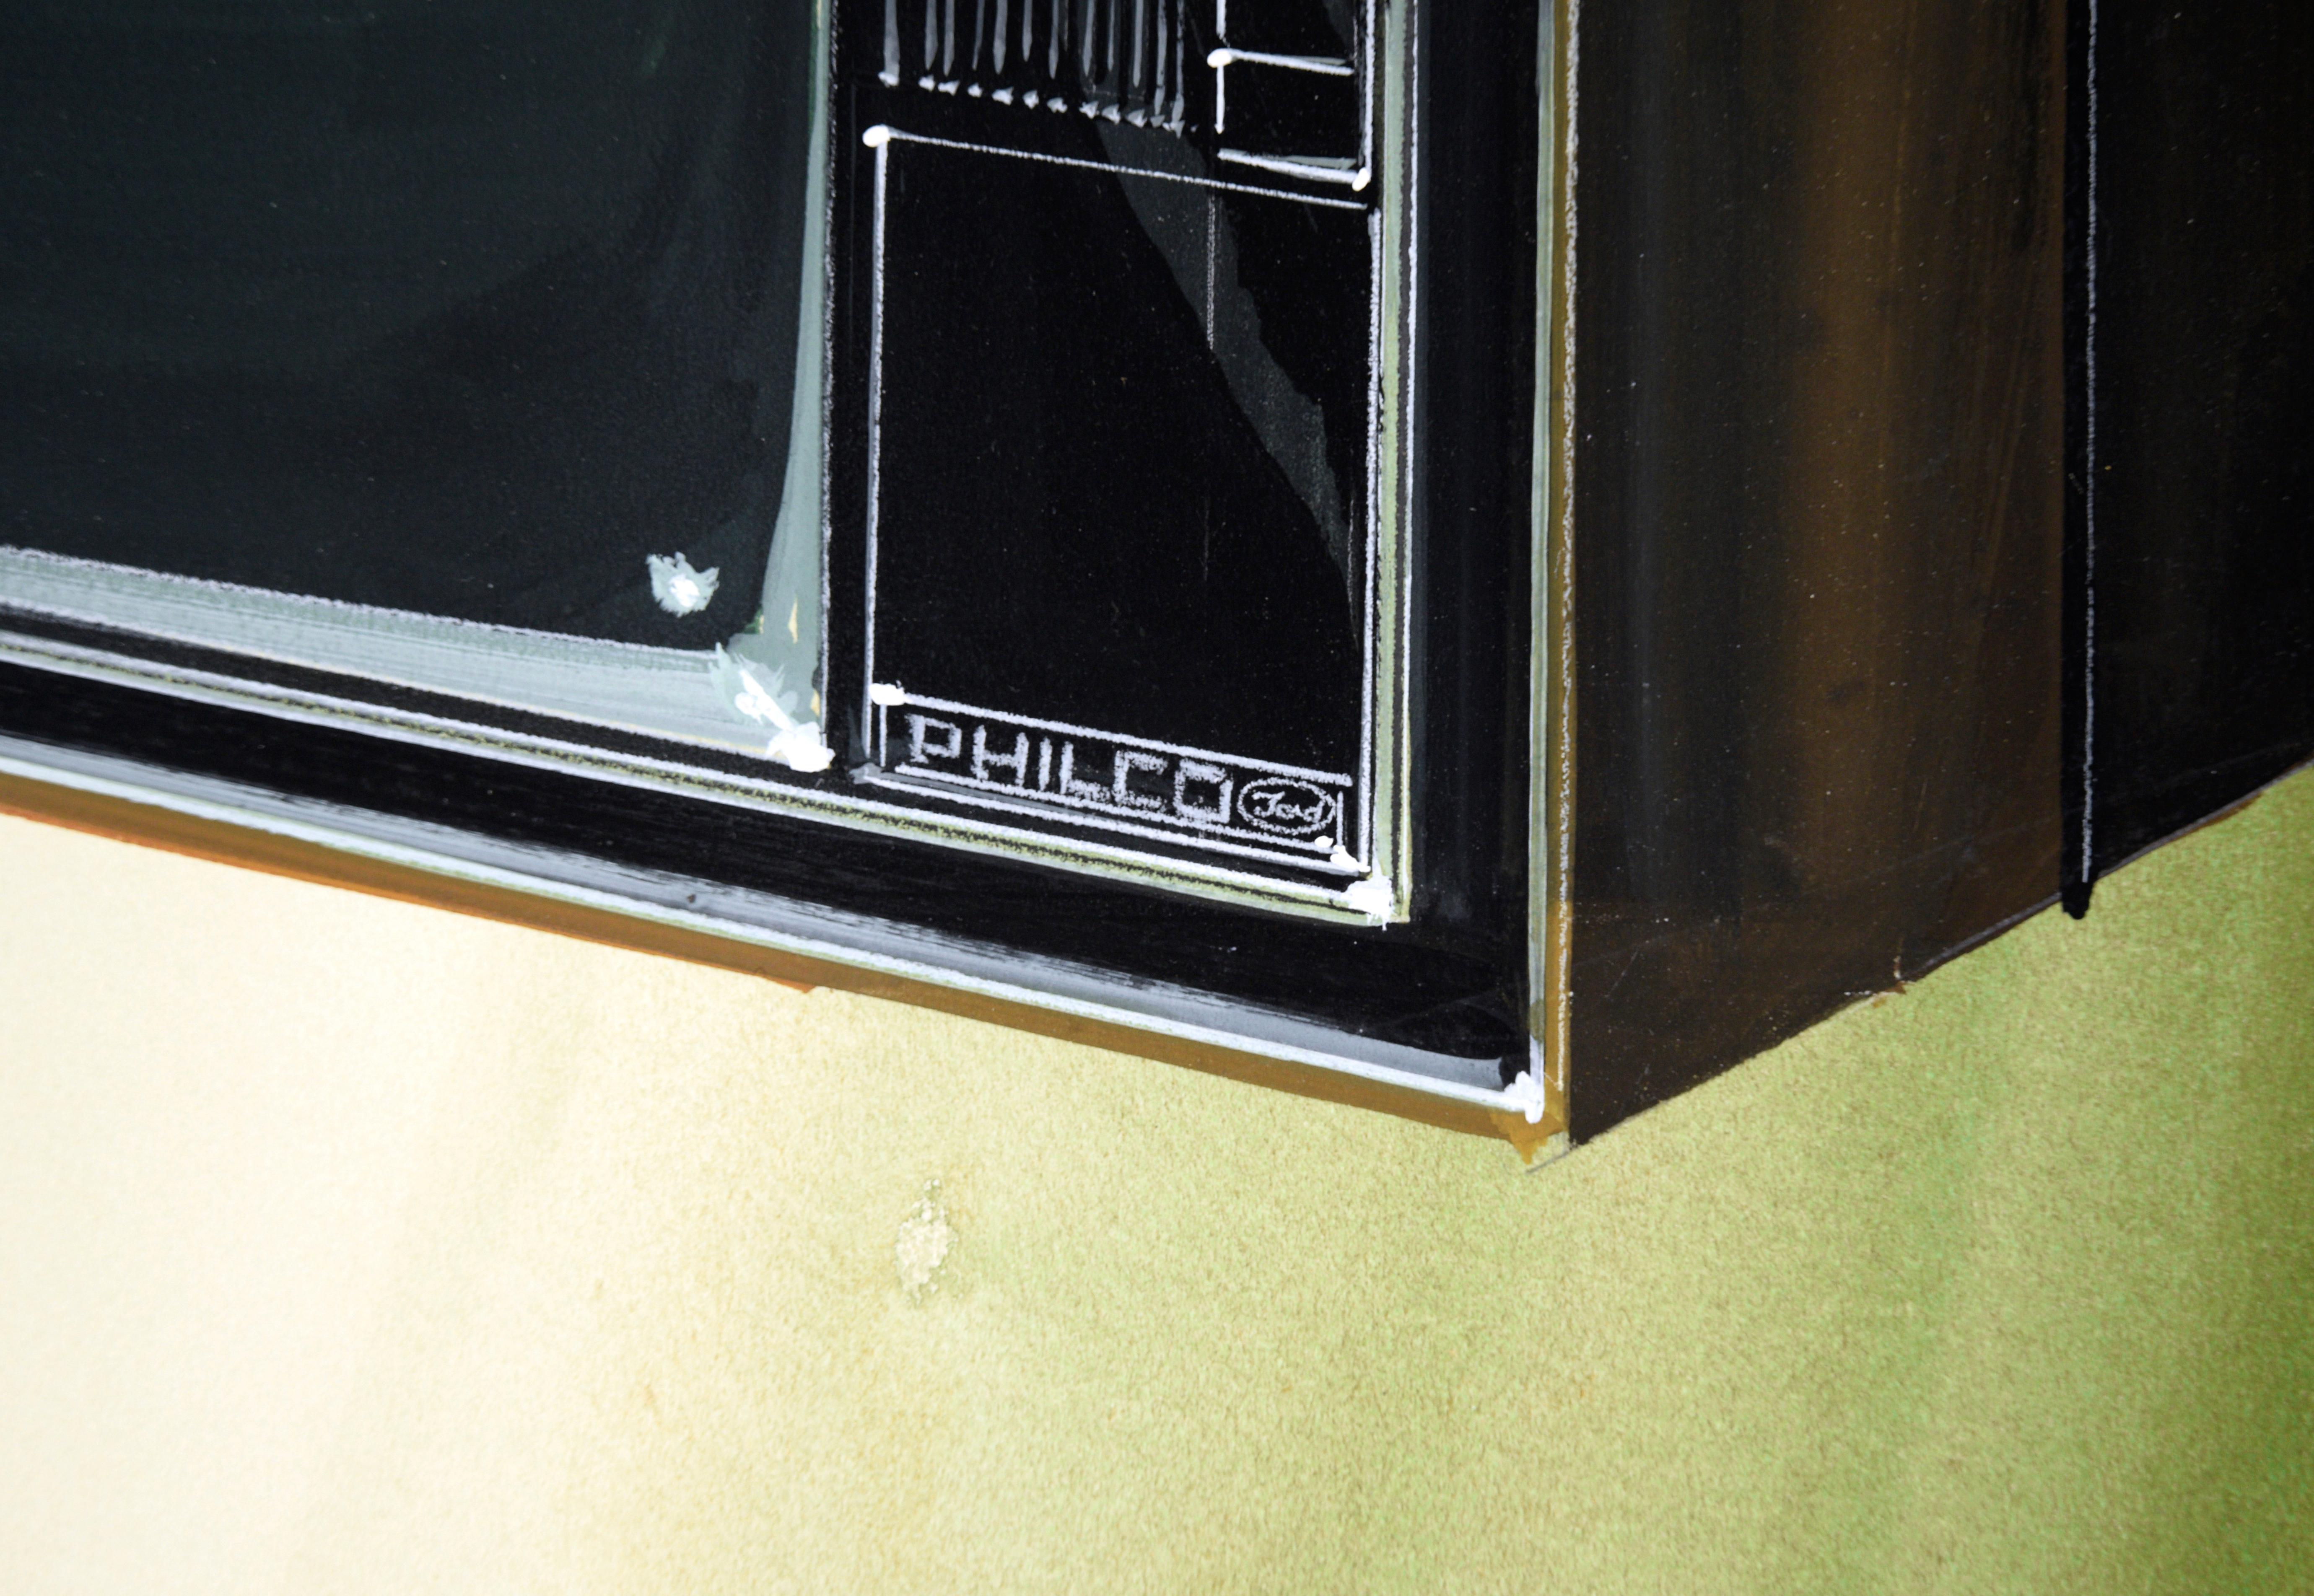 Illustration de qualité du design d'un téléviseur Philco Ford par Edward T. Liljenwall (américain, 1943-2010). Le téléviseur est représenté de manière experte sur un fond dégradé vert olive, avec des ombres douces et des détails spécifiques. Les